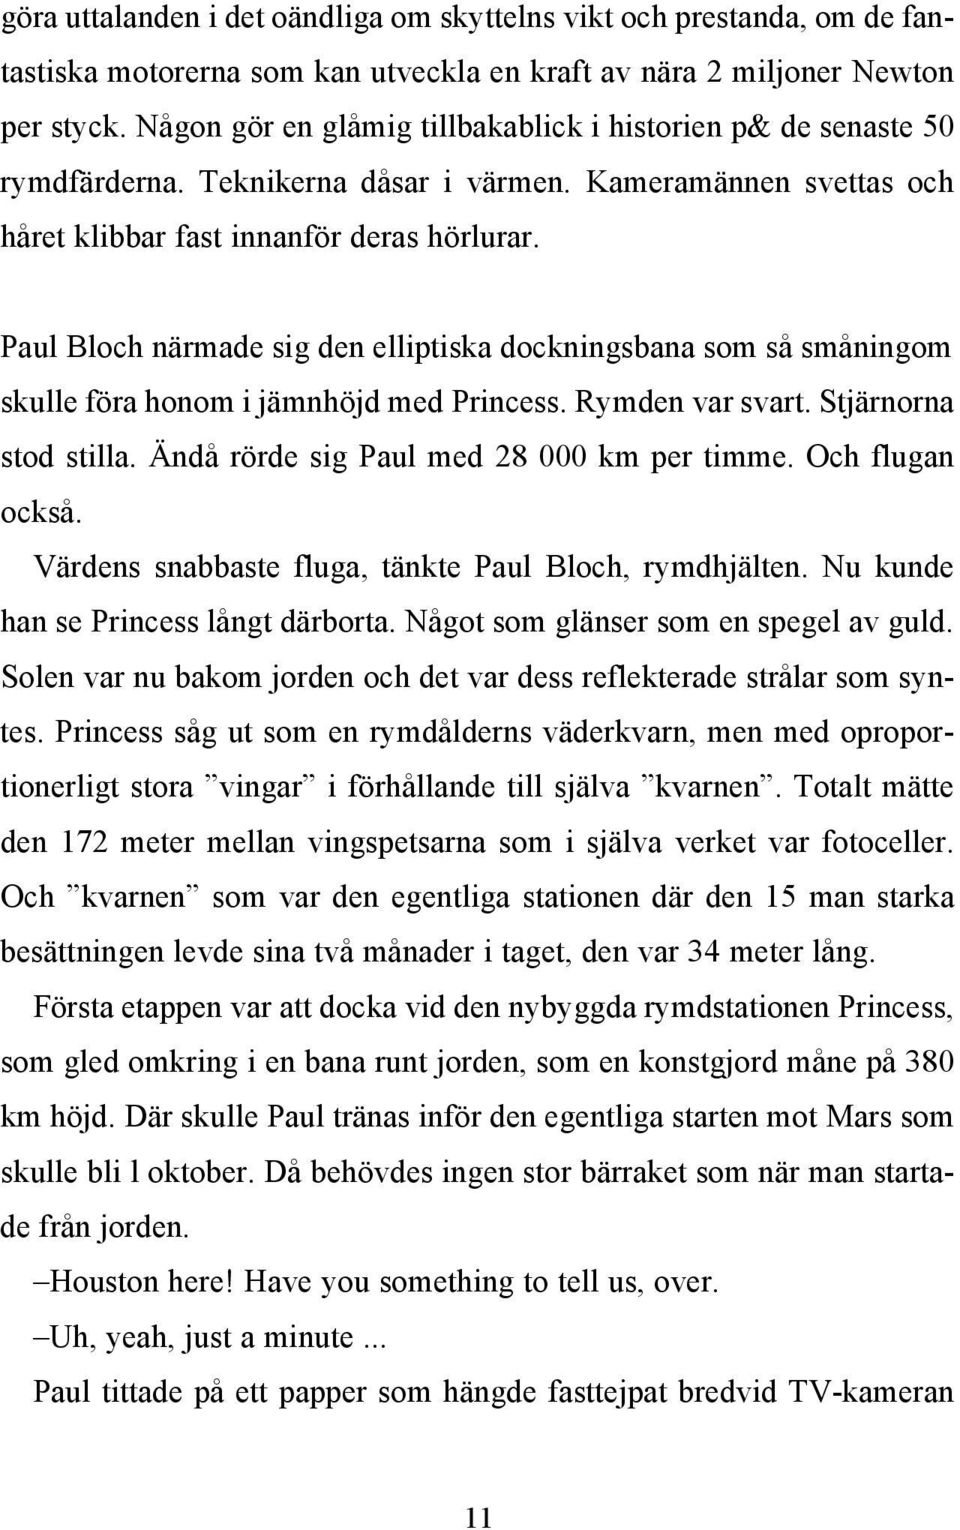 [blankrad] Paul Bloch närmade sig den elliptiska dockningsbana som så småningom skulle föra honom i jämnhöjd med Princess. Rymden var svart. Stjärnorna stod stilla.